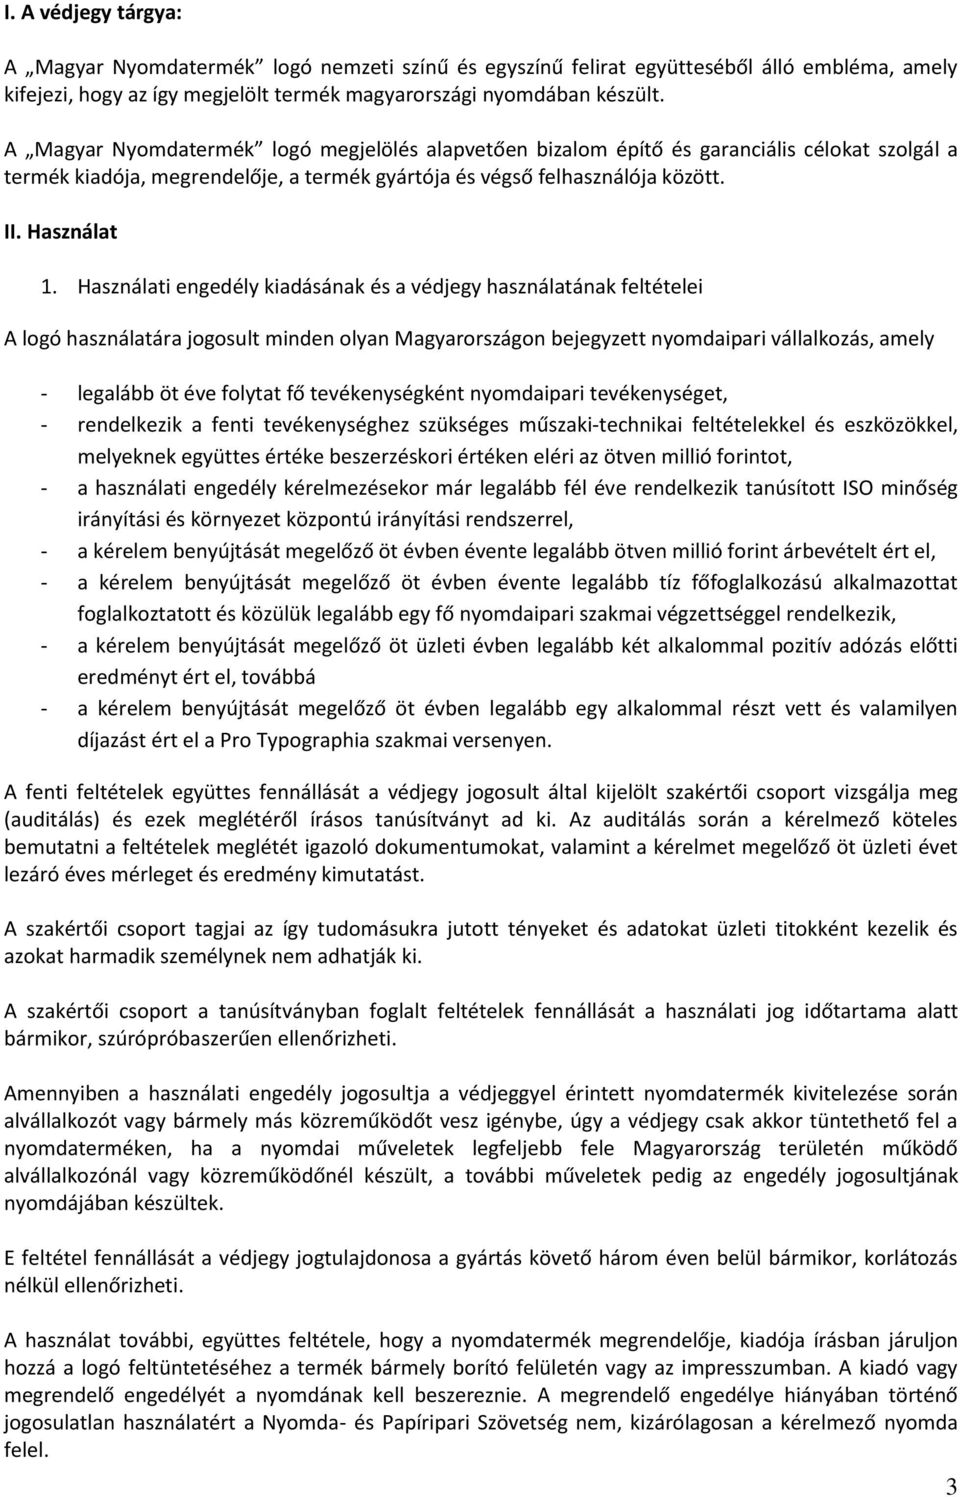 Használati engedély kiadásának és a védjegy használatának feltételei A logó használatára jogosult minden olyan Magyarországon bejegyzett nyomdaipari vállalkozás, amely - legalább öt éve folytat fő